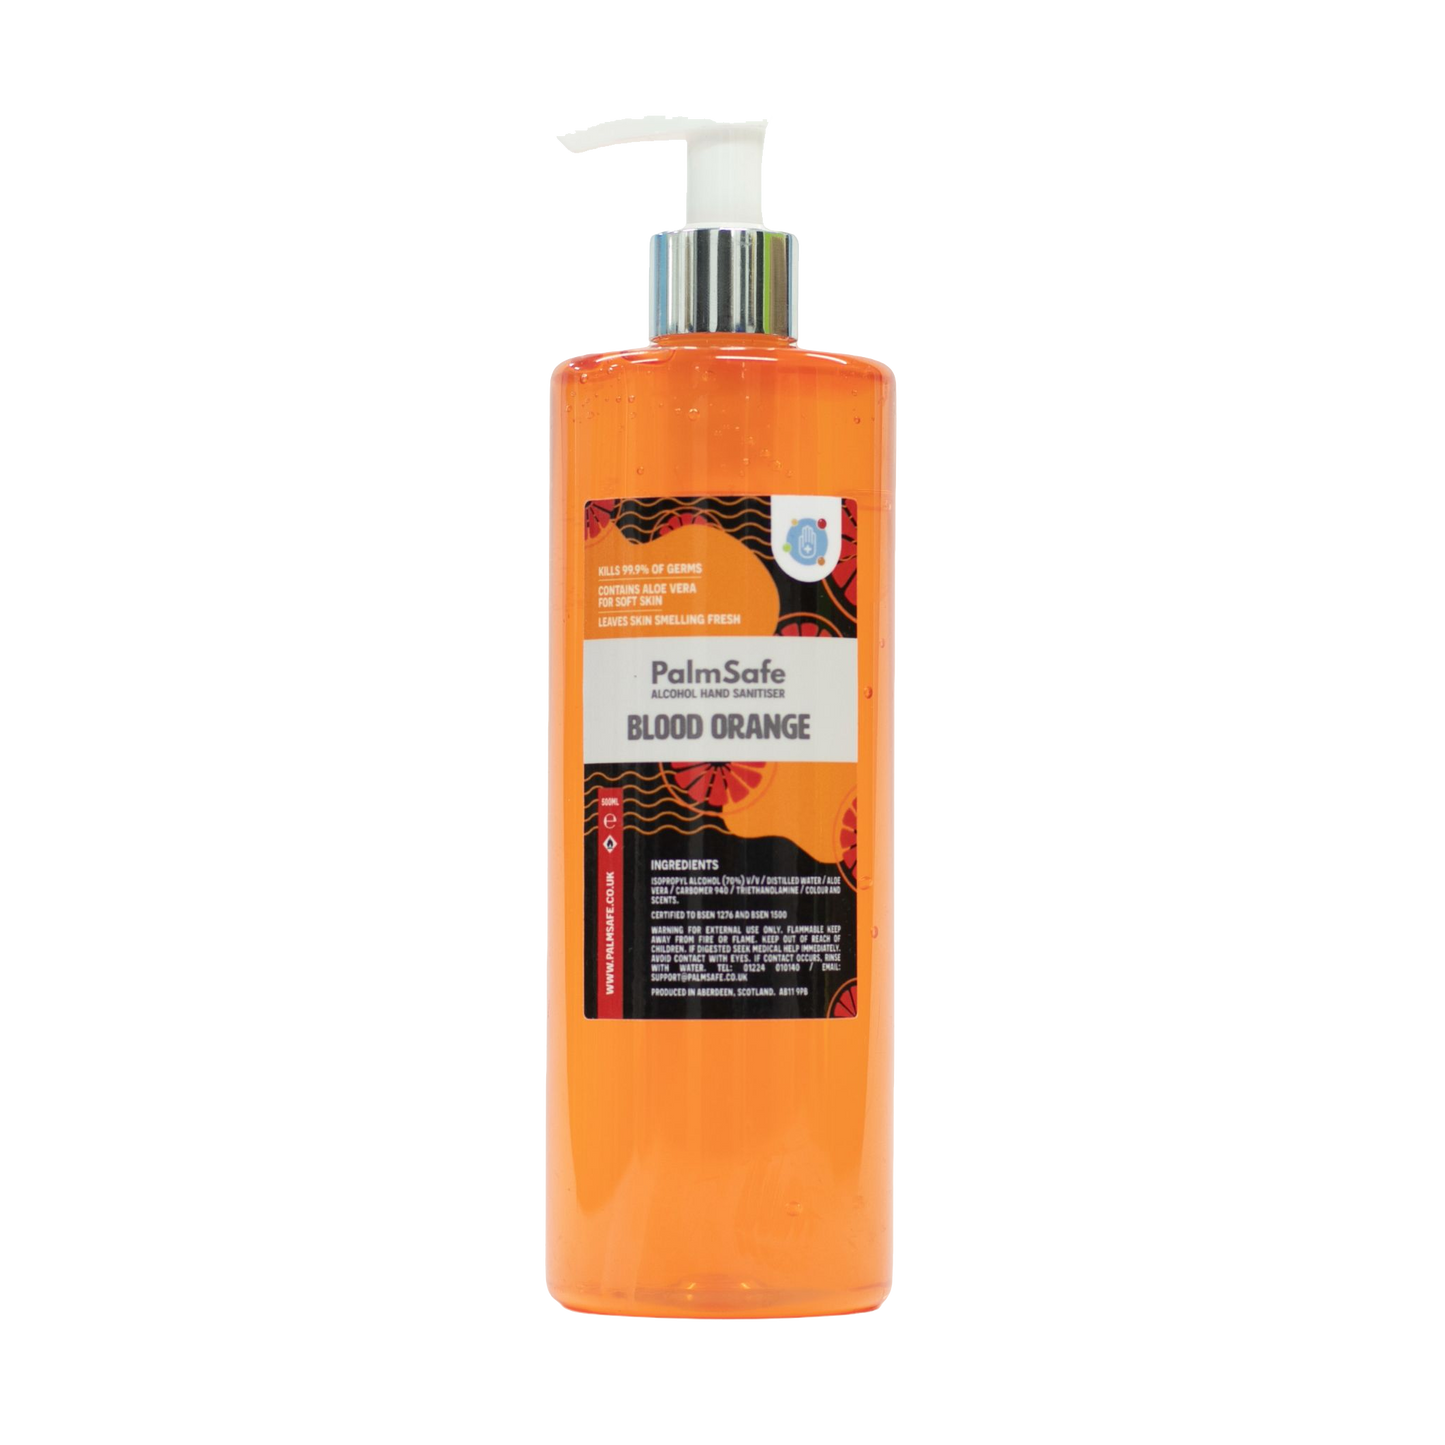 Palm Safe Blood Orange 500ml Pump Bottle of Hand Sanitiser